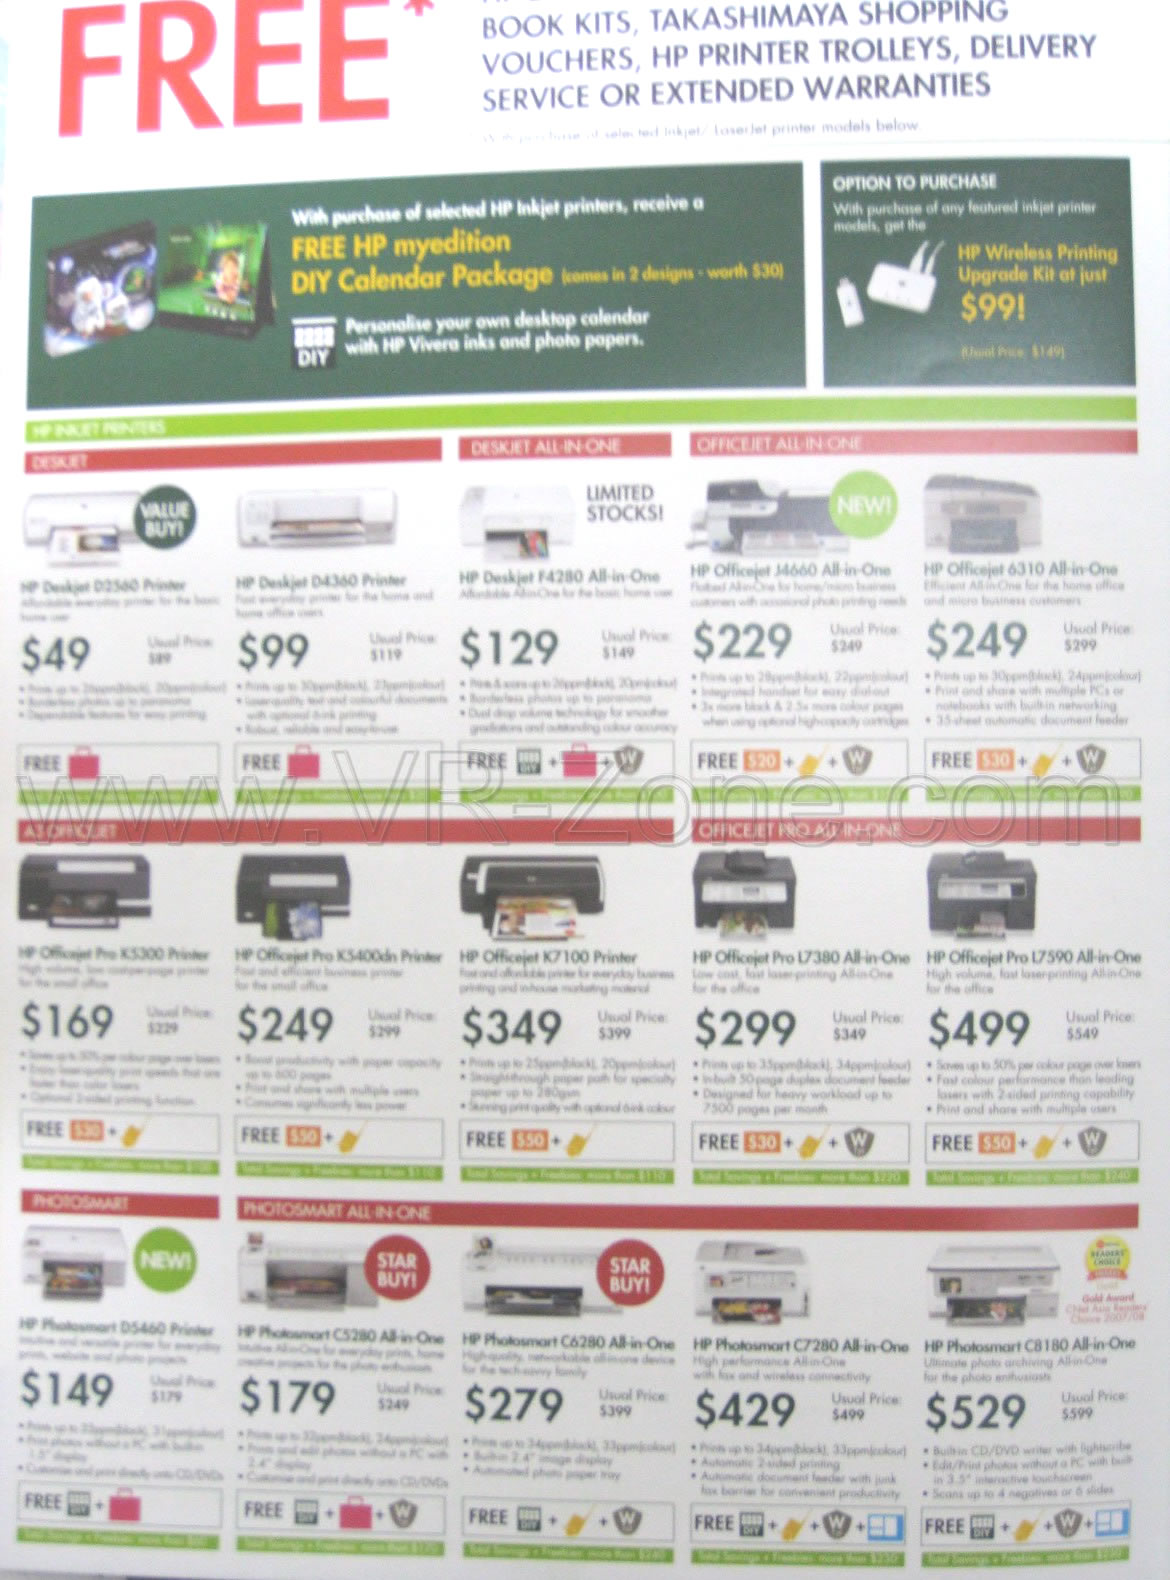 Sitex 2008 price list image brochure of Hp Printers 3